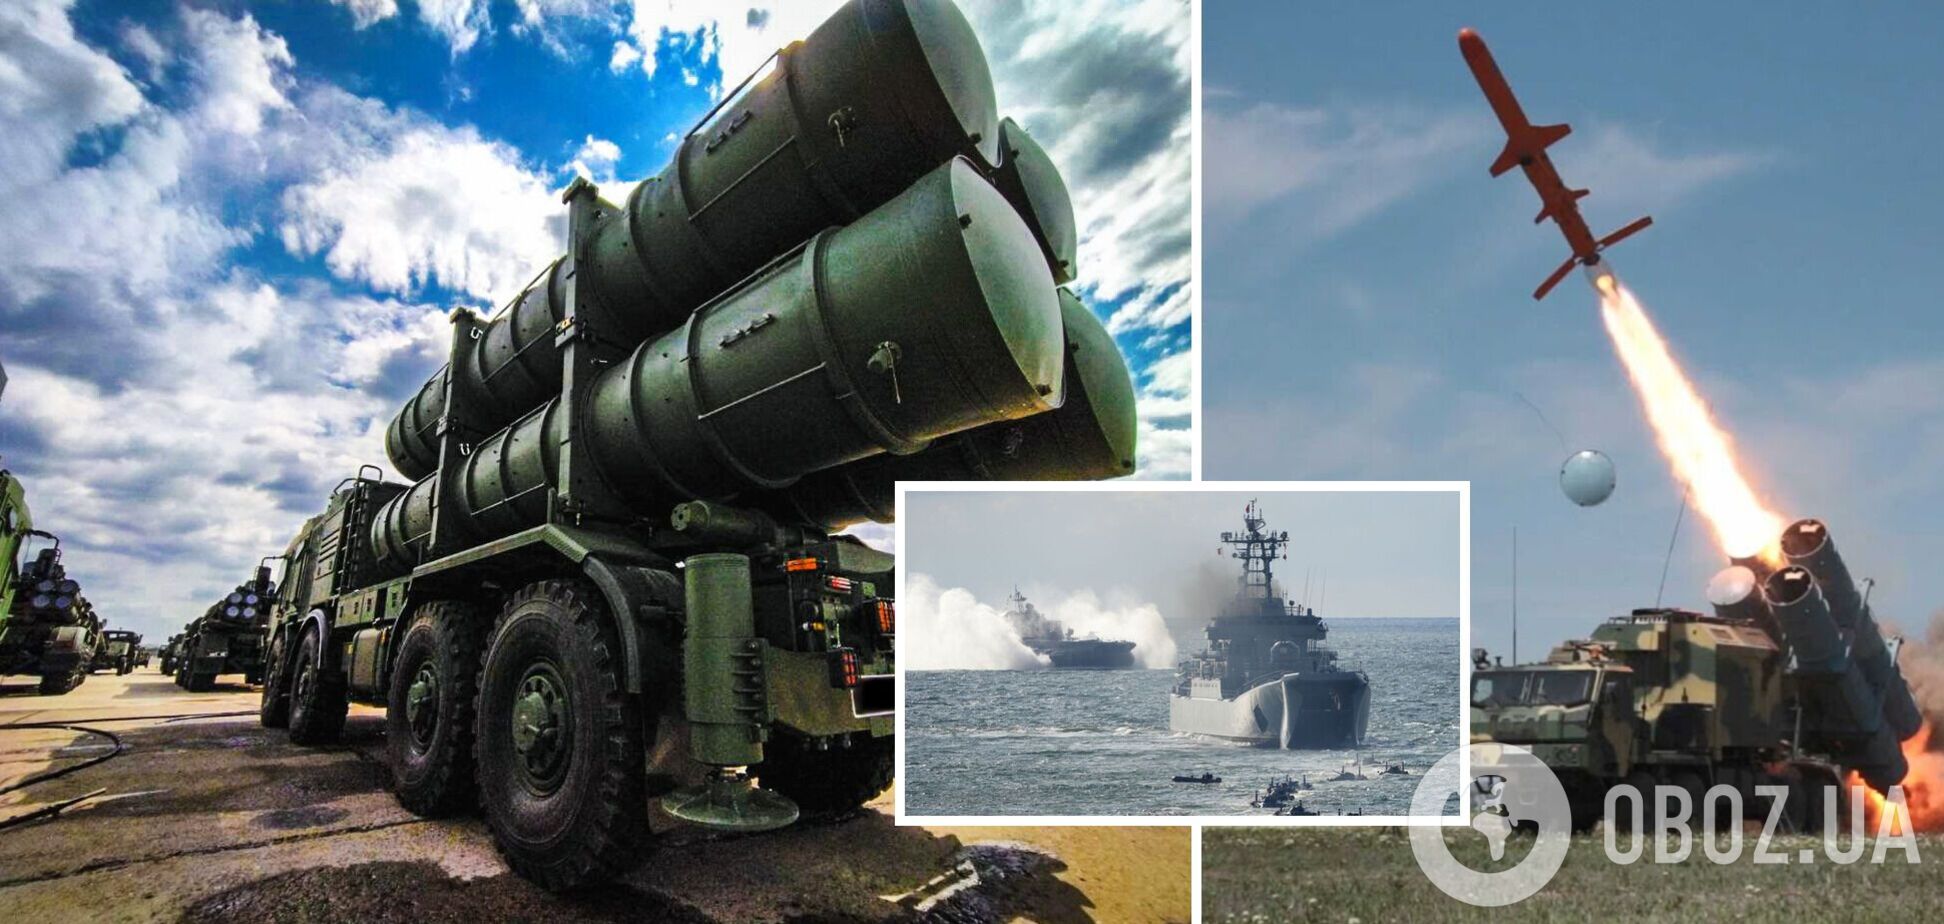 'Нептуны' впервые использовали не в апреле: СМИ рассказали, как украинские ракеты заставили корабли РФ убегать в начале войны